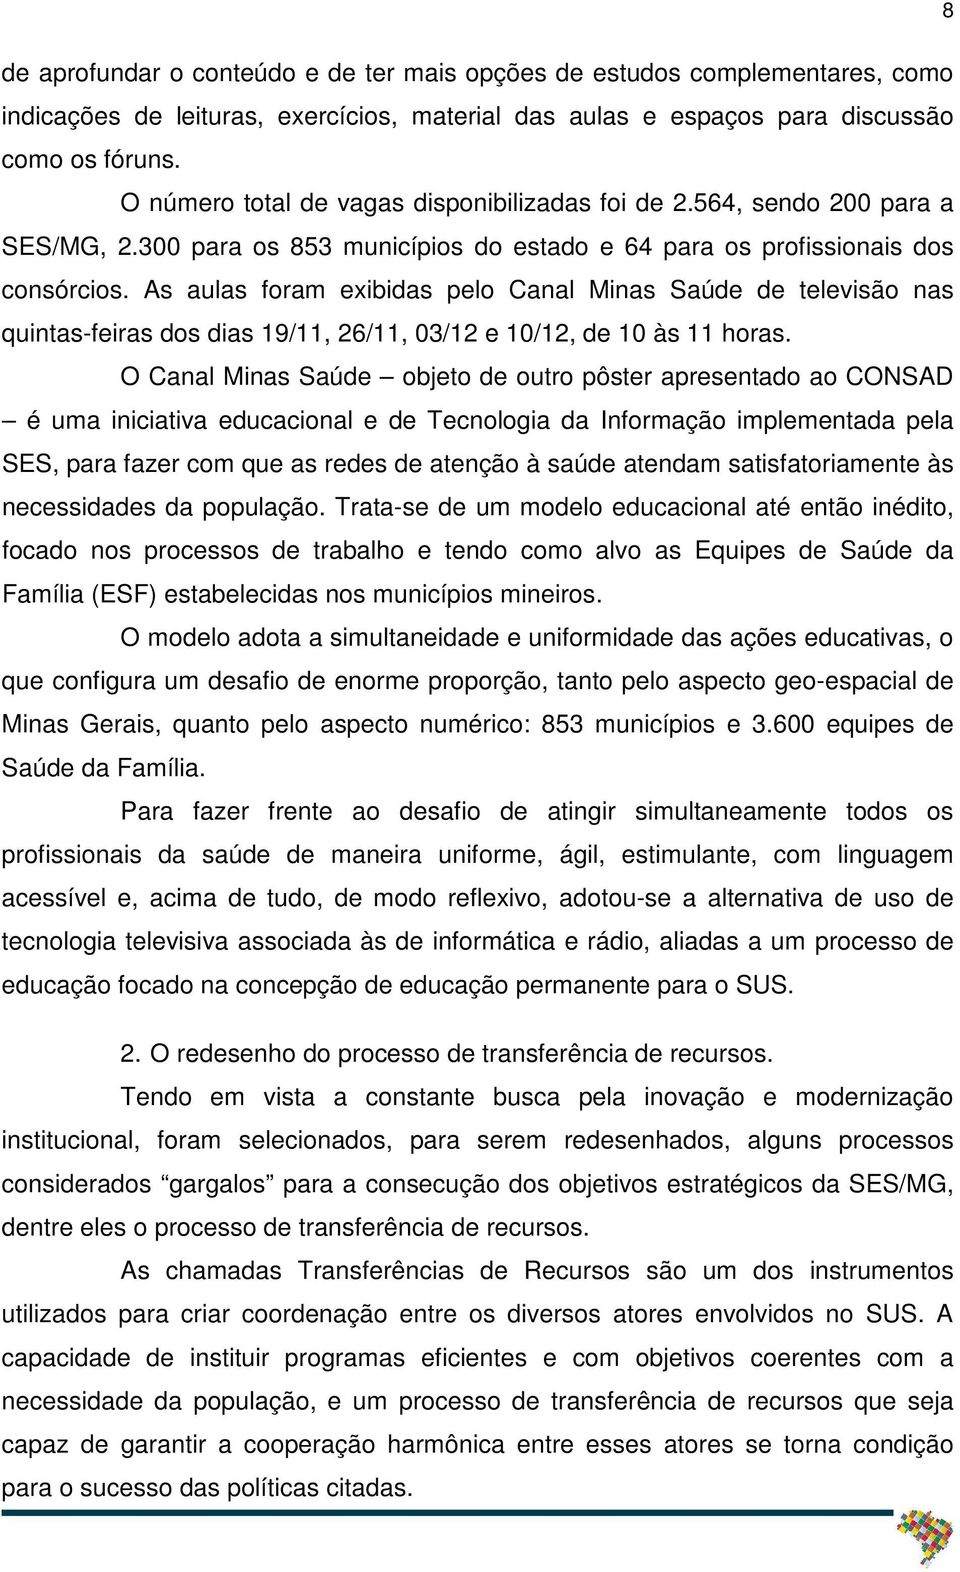 As aulas foram exibidas pelo Canal Minas Saúde de televisão nas quintas-feiras dos dias 19/11, 26/11, 03/12 e 10/12, de 10 às 11 horas.